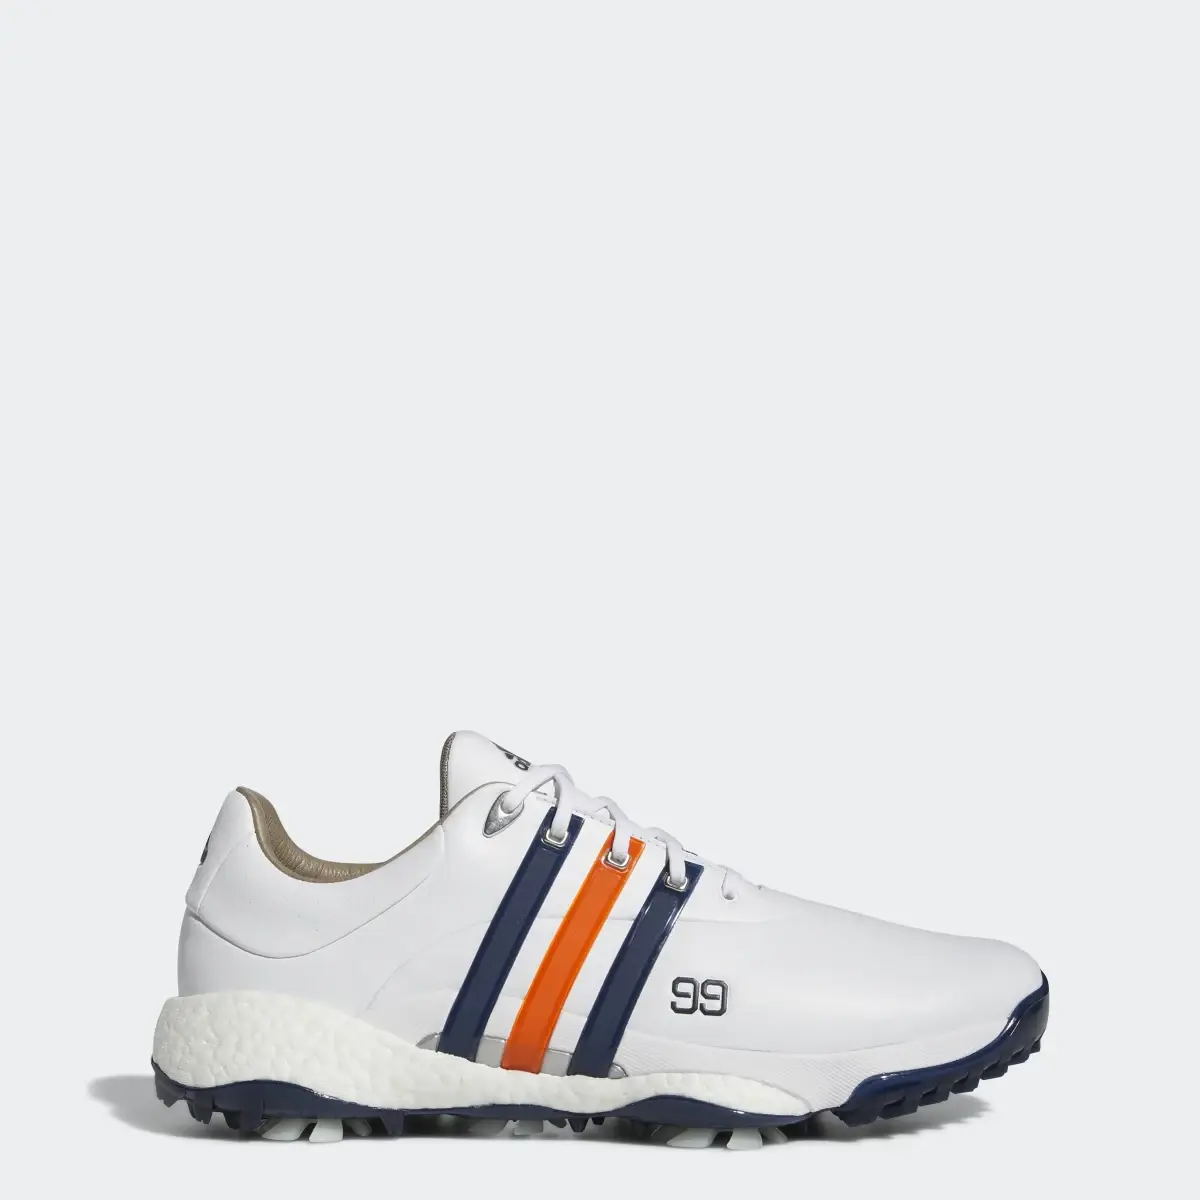 Adidas DJ Gretzky Tour360 22 Golf Shoes. 1